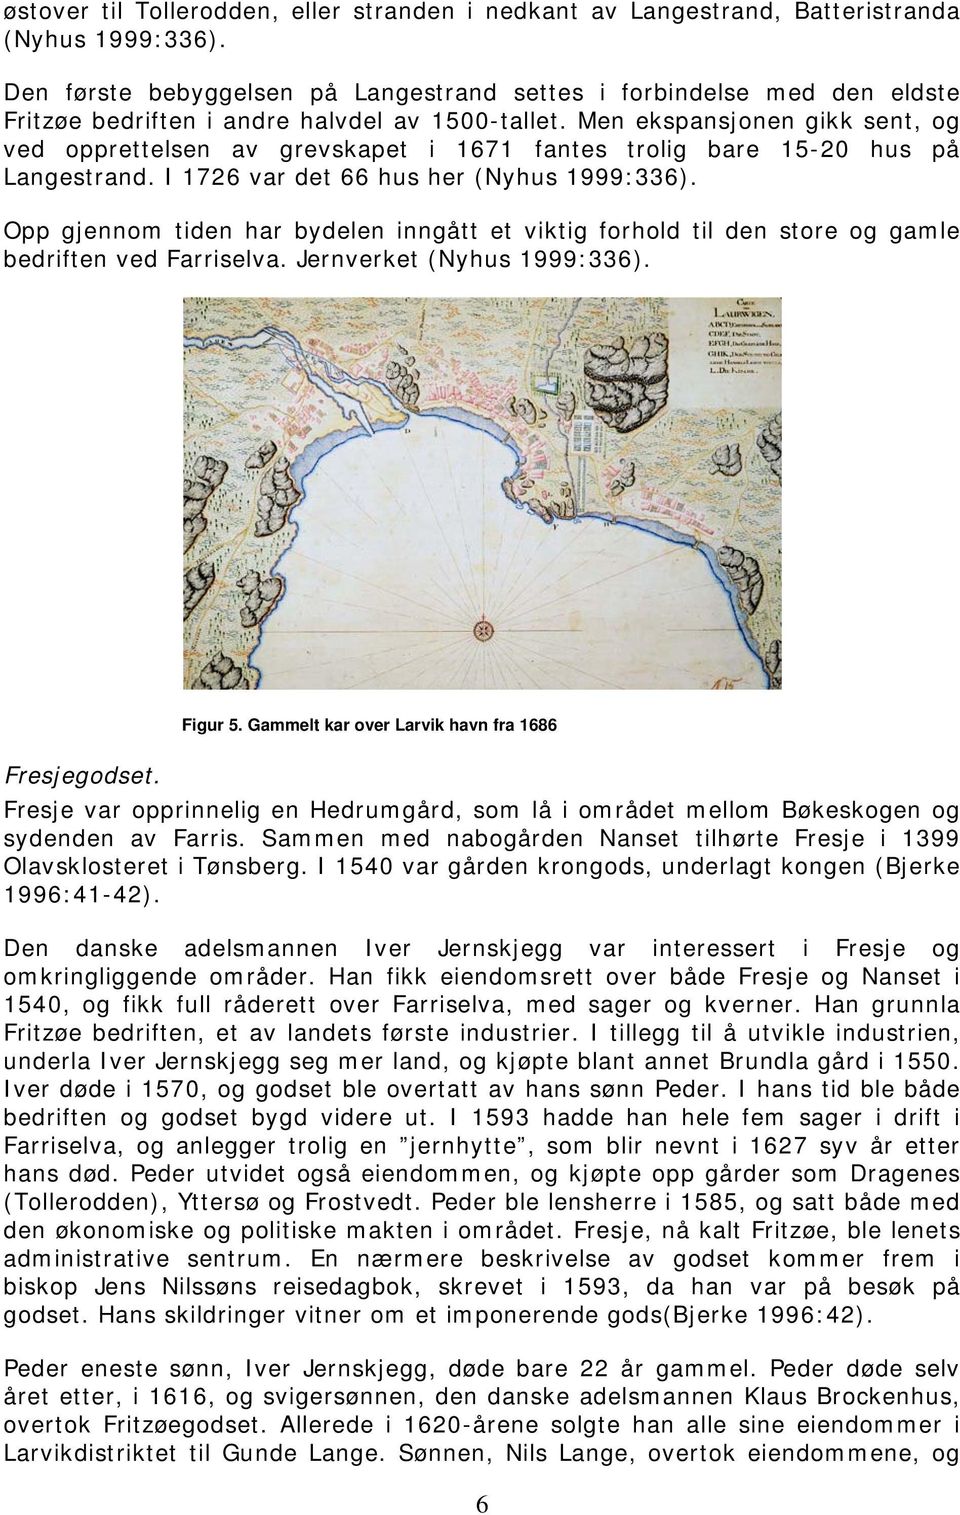 Men ekspansjonen gikk sent, og ved opprettelsen av grevskapet i 1671 fantes trolig bare 15-20 hus på Langestrand. I 1726 var det 66 hus her (Nyhus 1999:336).